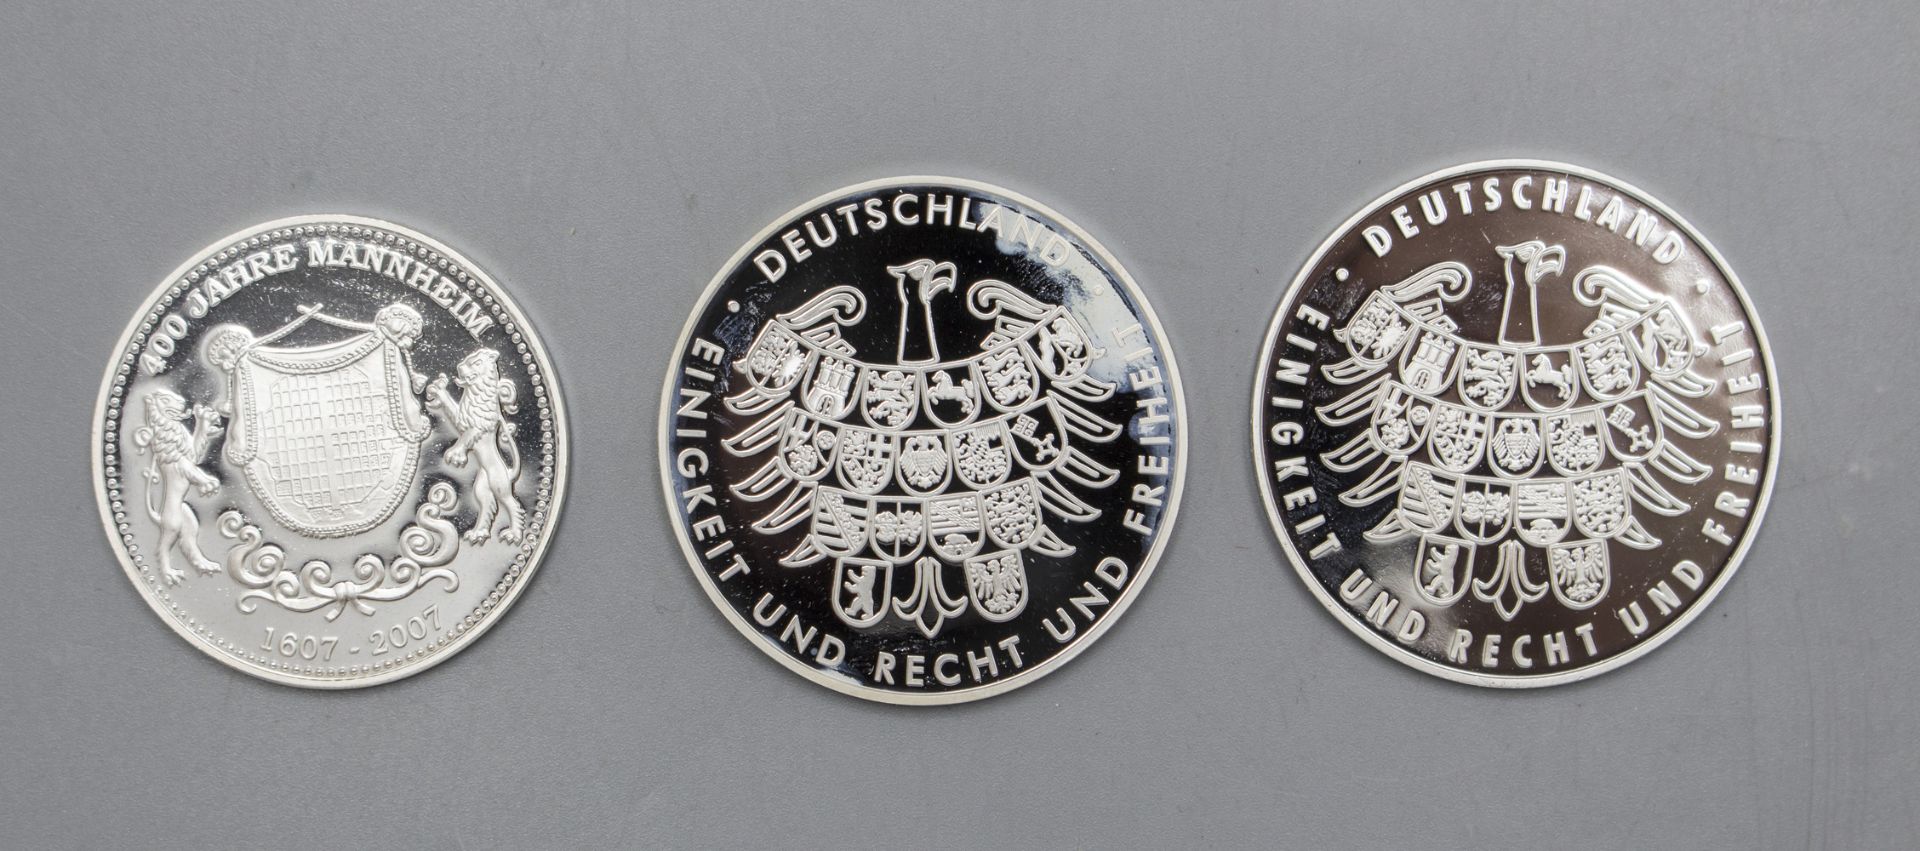 Konvolut Münzen und Medaillen / A collection of coins and medals, unter anderem Mannheim - Image 5 of 10